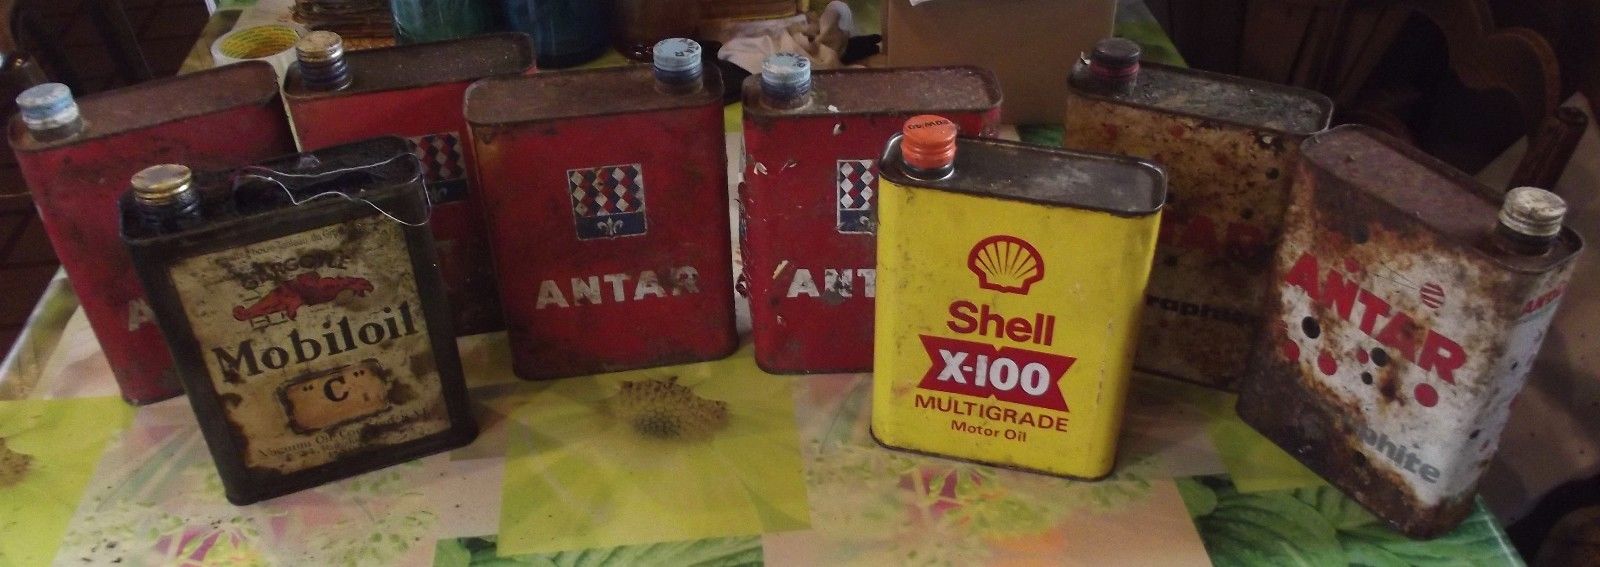 8 Ancien Bidons d'Huile Mobiloil ,Shell,Antar Vintage Automobile Poids-Lourd